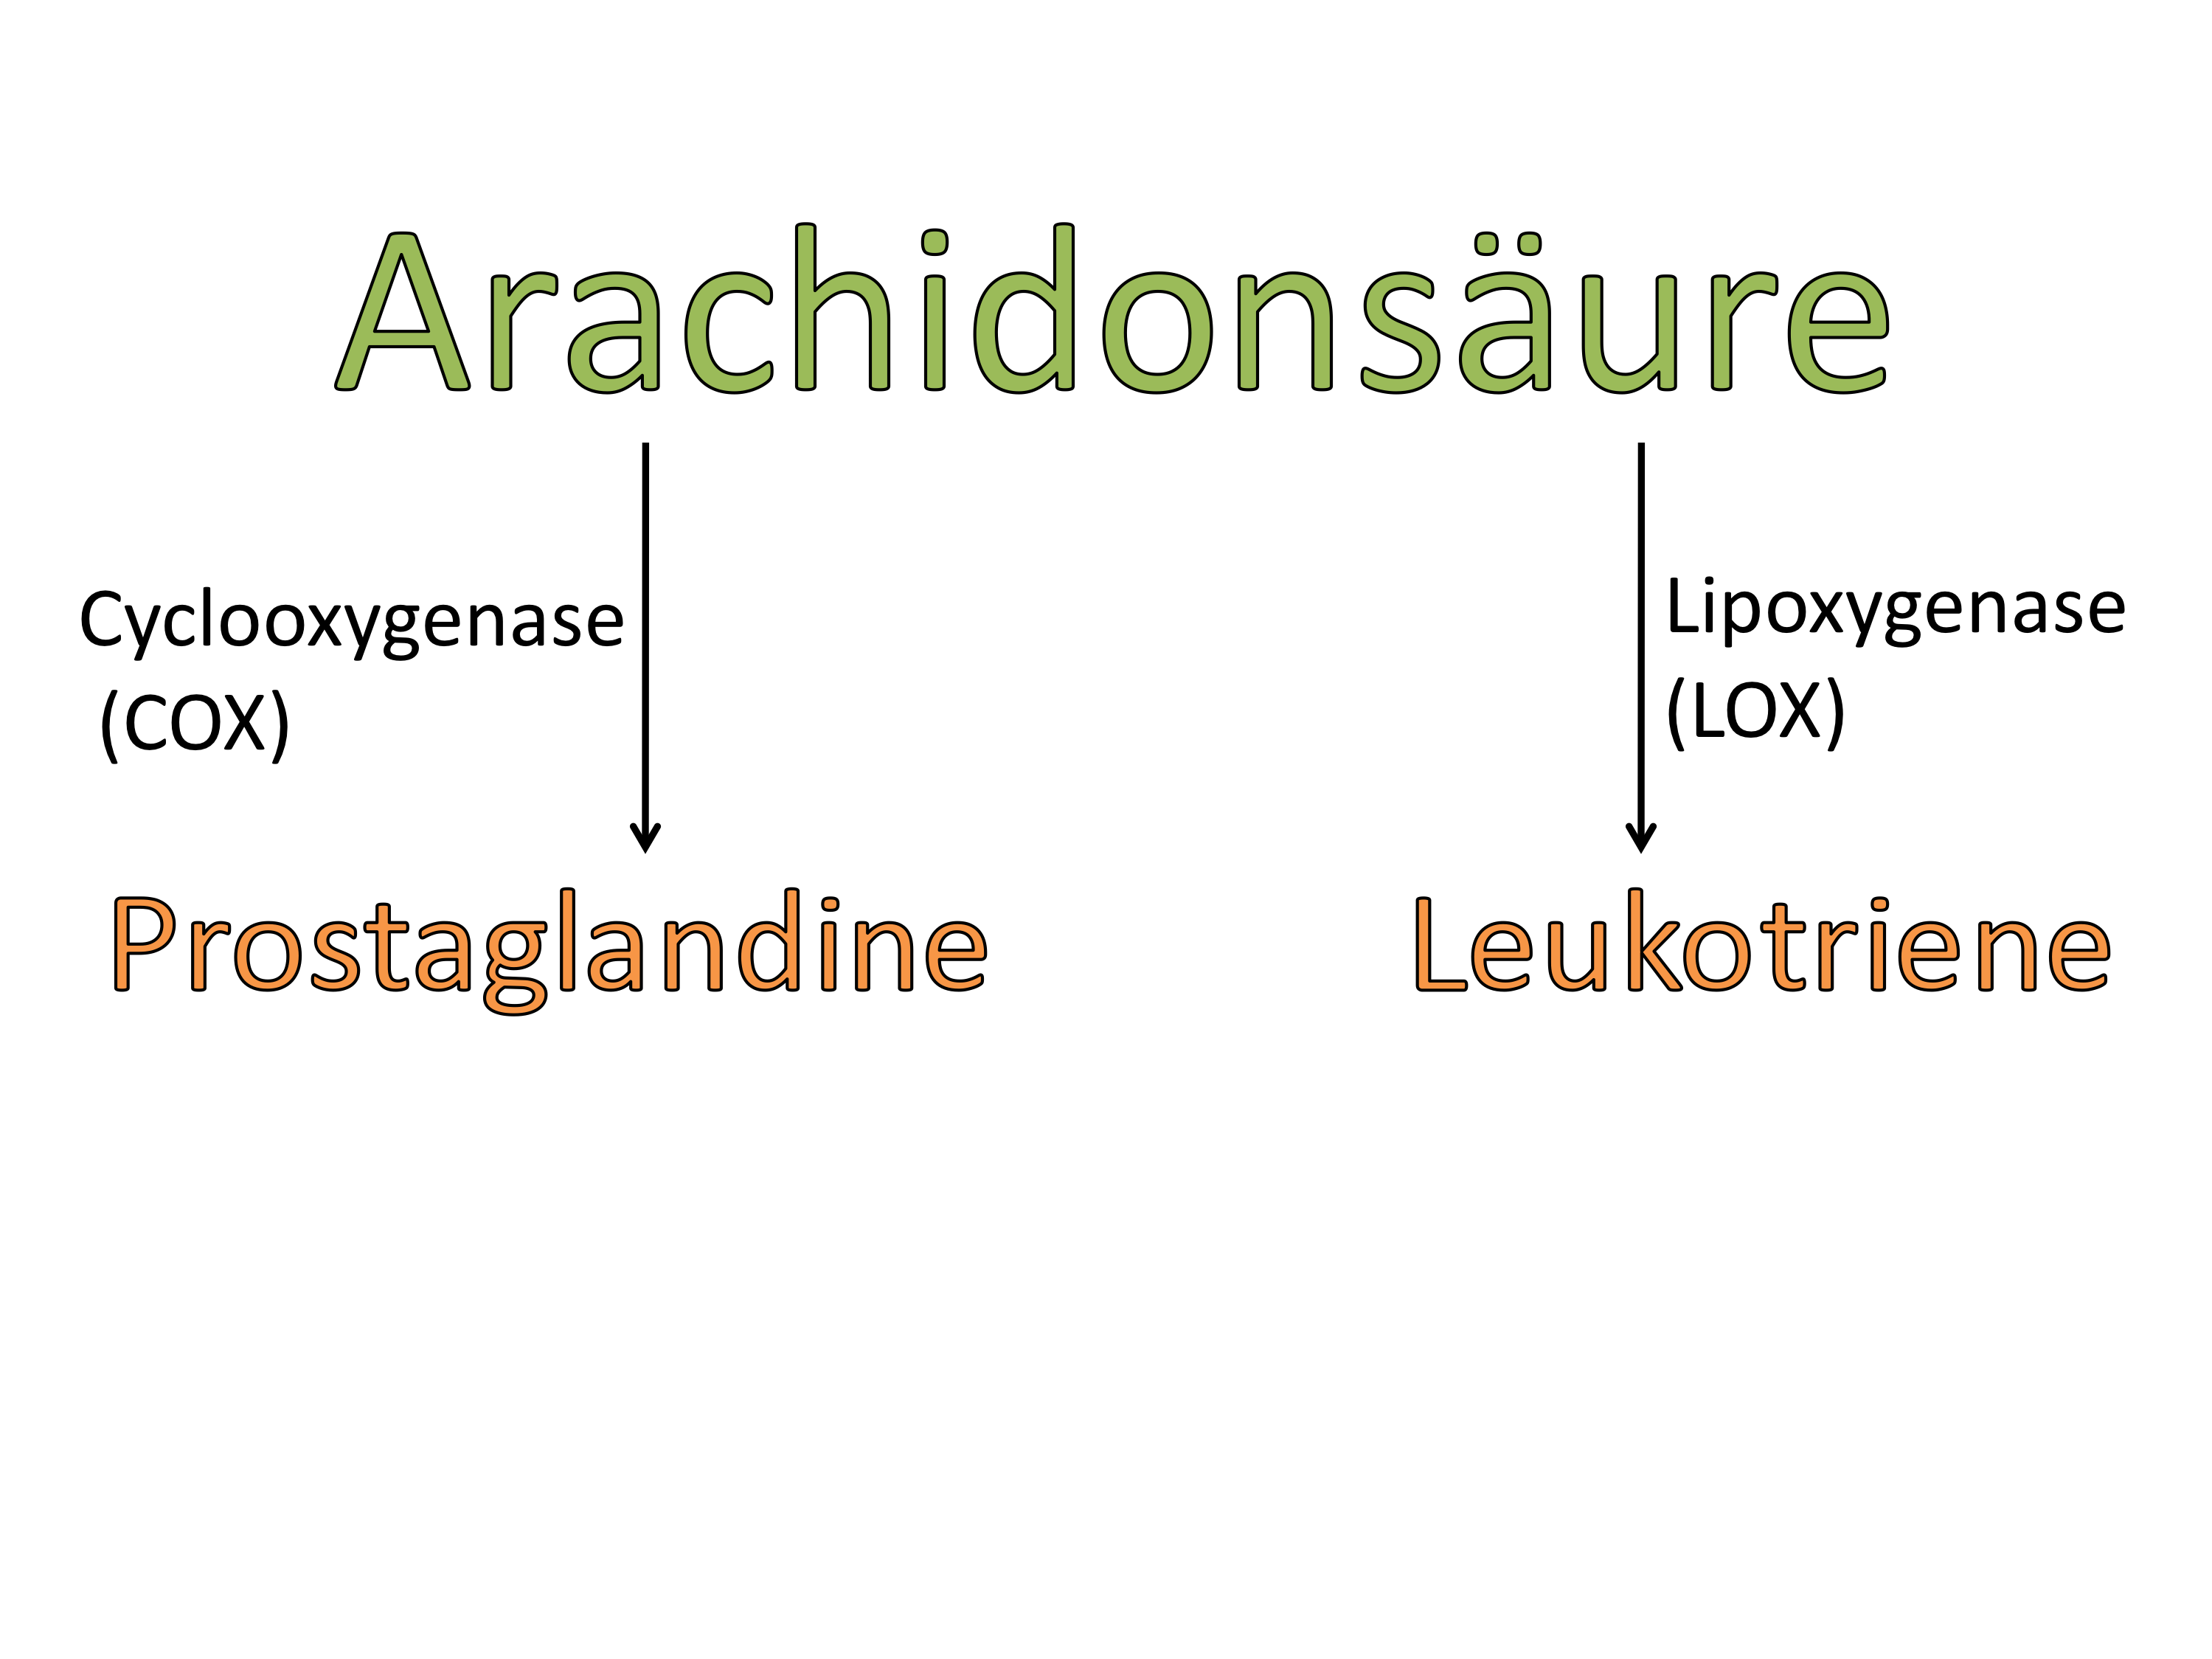 Aus Arachidonsäure können sowohl Prostglandine als auch Leukotriene gebildet werden.